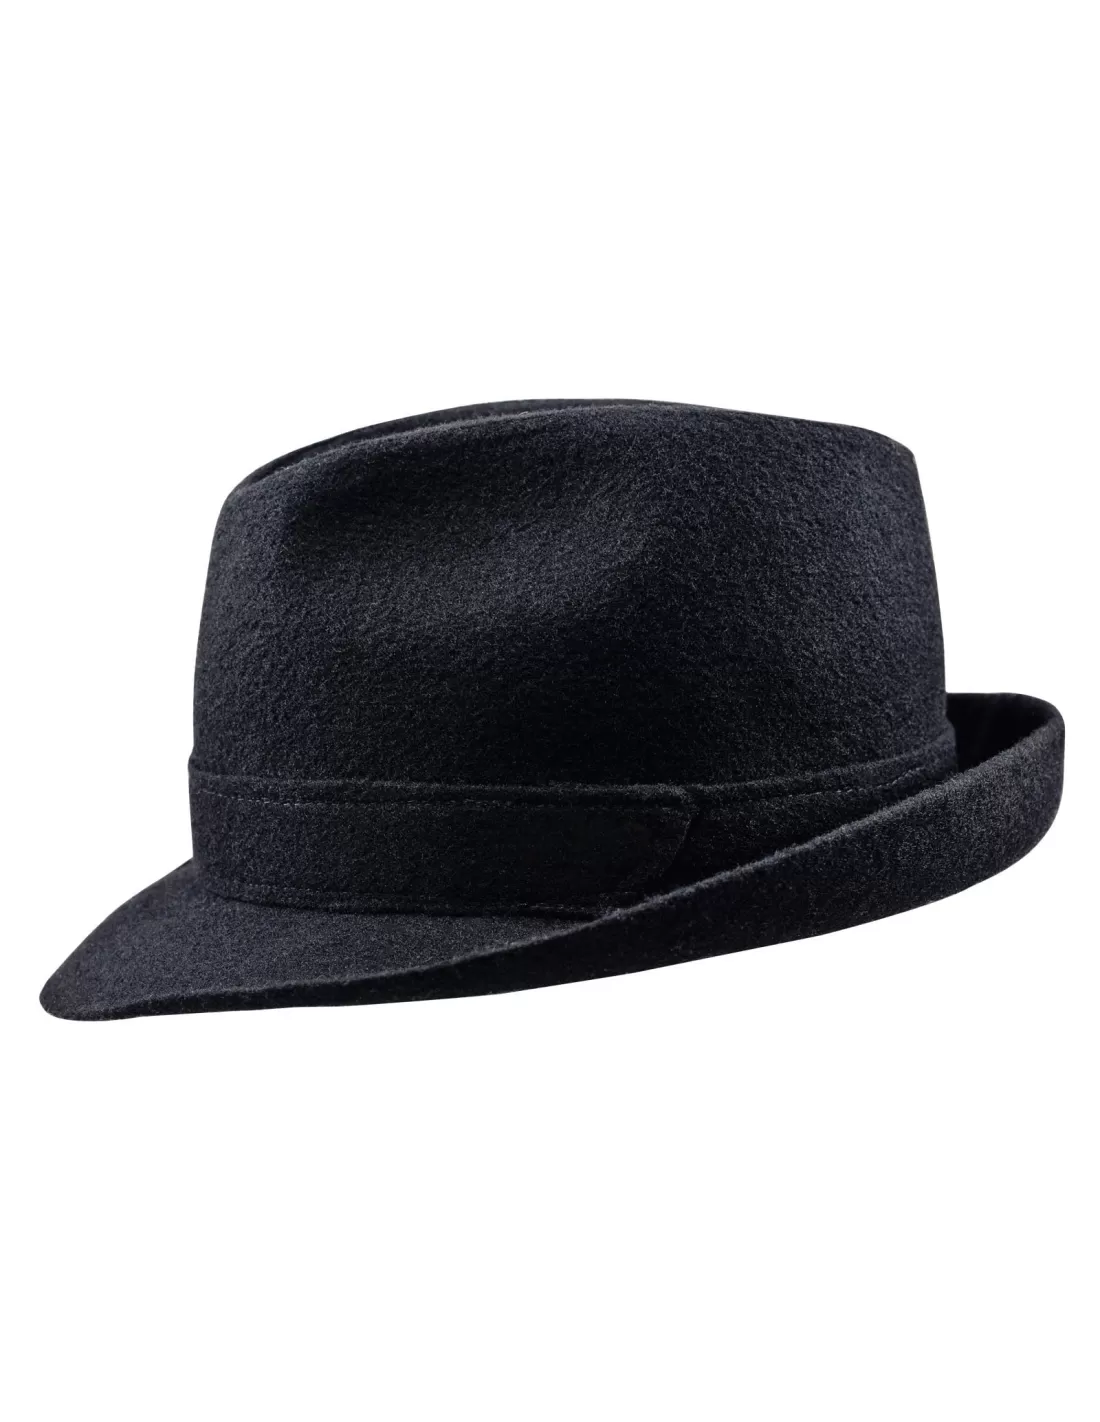 Перевести шляпа. Шляпа Федора трилби. Шляпа Fedora Trilby. Шляпа трилби черная. Борсалино шляпа референс.